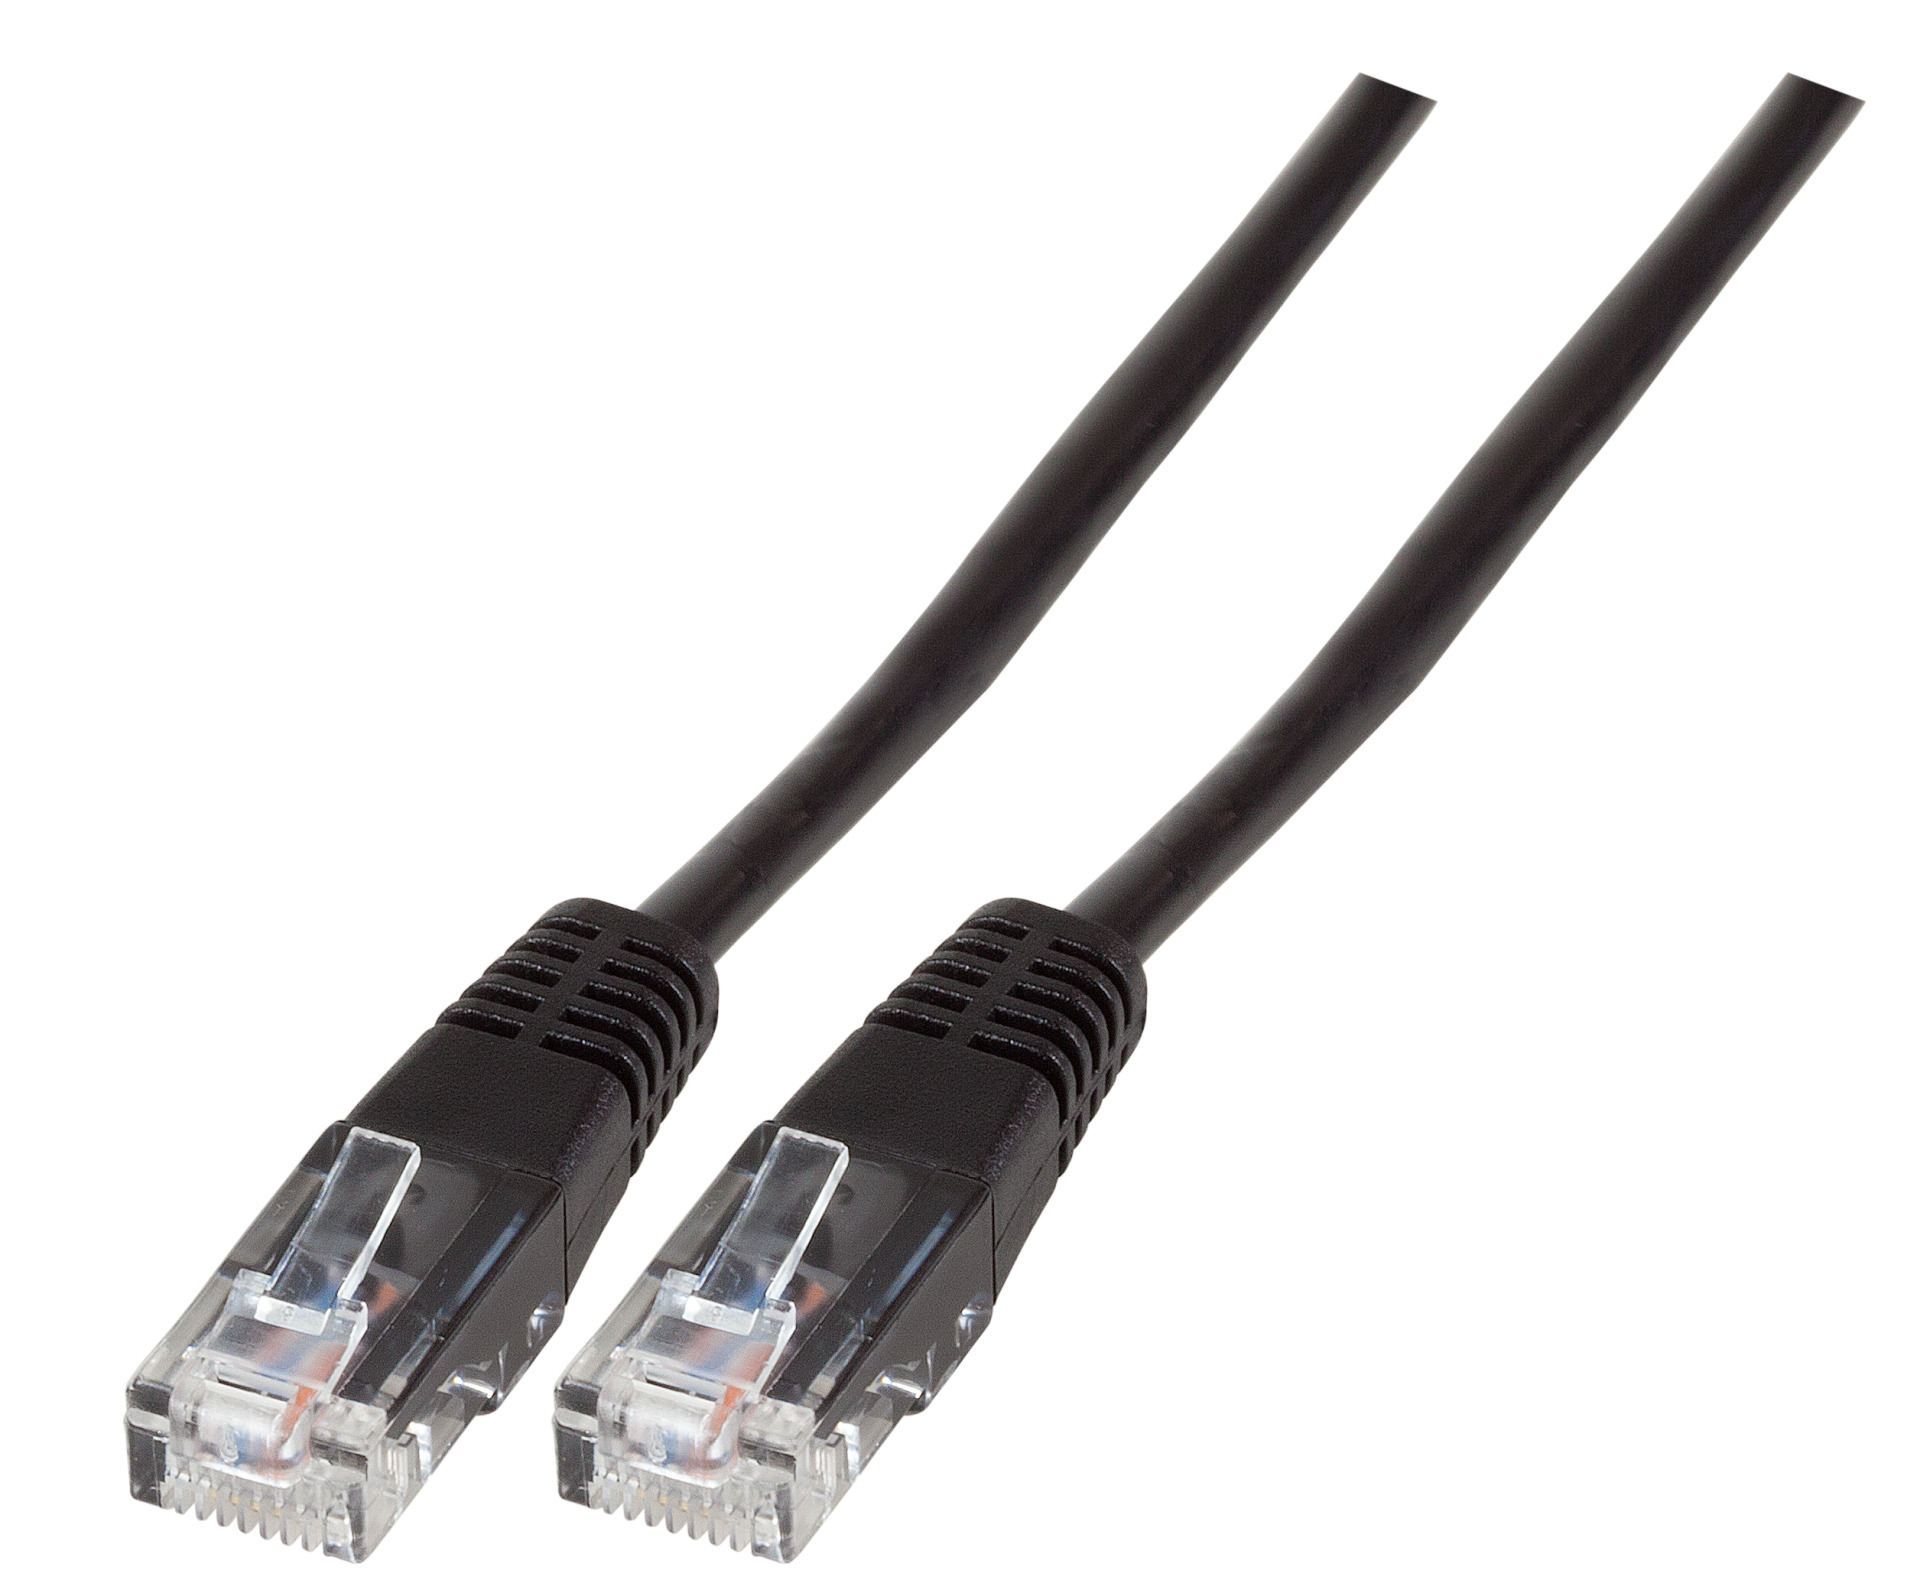 Modular Cable RJ45 (8/4) - RJ45 (8/4), Moulded, Black, 1 m